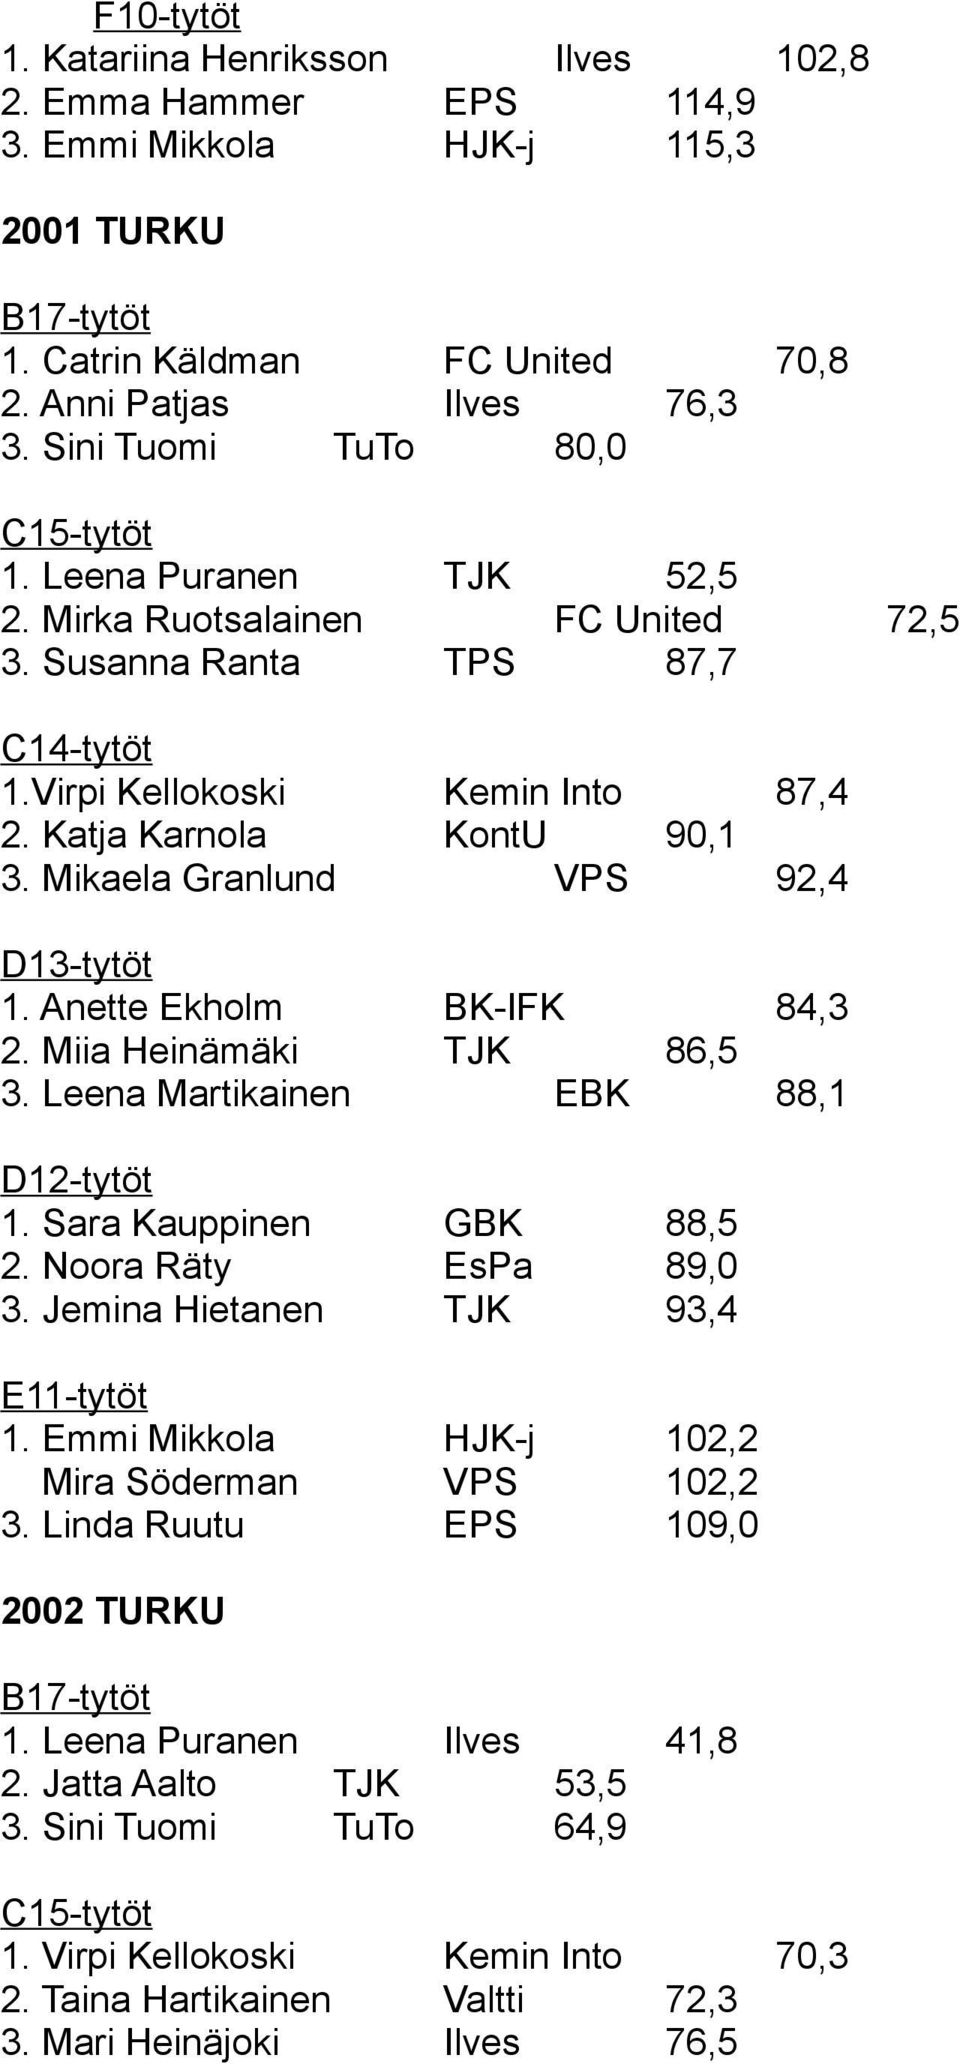 Anette Ekholm BK-IFK 84,3 2. Miia Heinämäki TJK 86,5 3. Leena Martikainen EBK 88,1 1. Sara Kauppinen GBK 88,5 2. Noora Räty EsPa 89,0 3. Jemina Hietanen TJK 93,4 1.